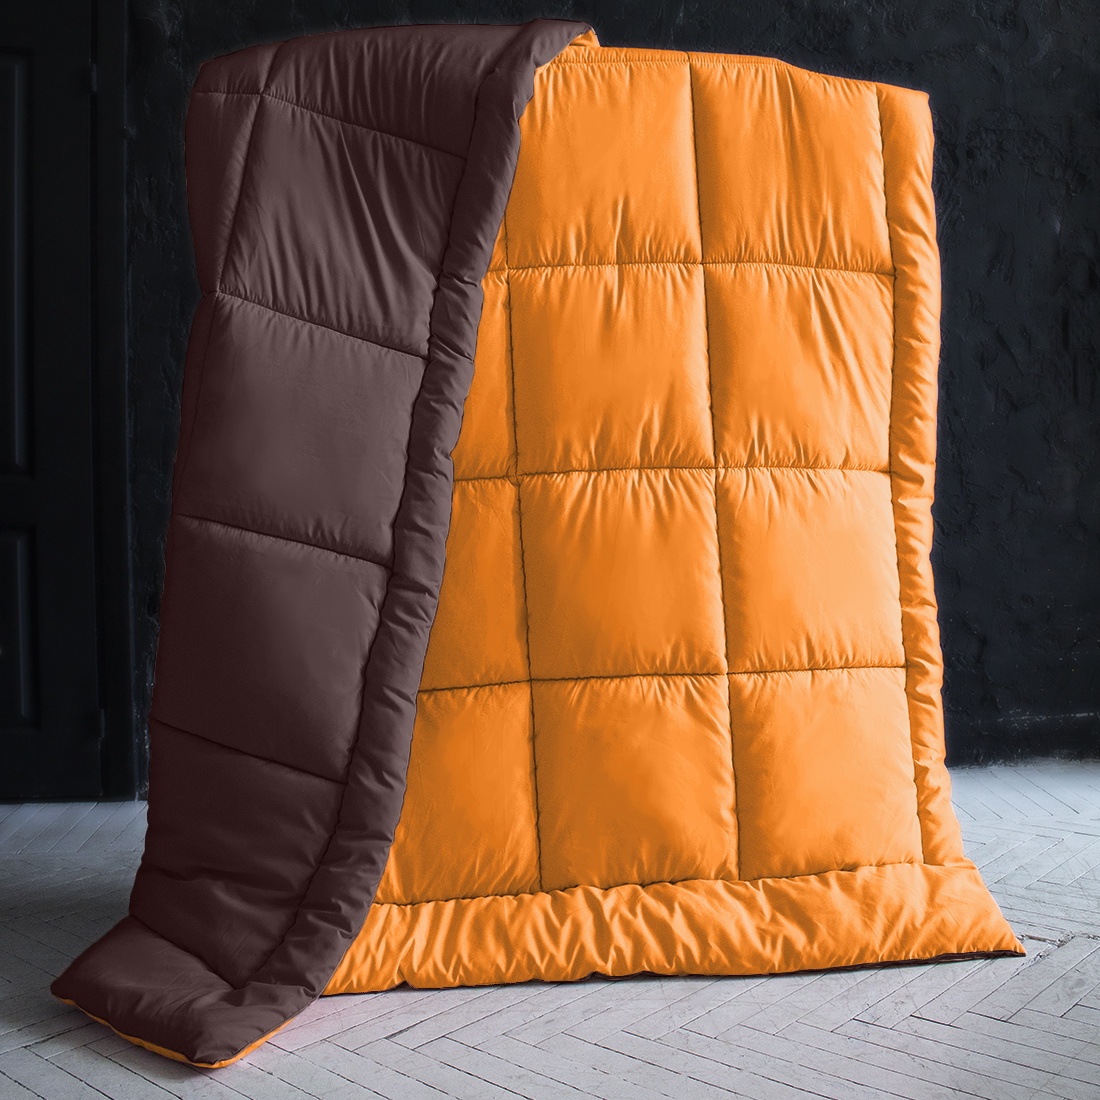 фото Одеяло "SleepiX", Мультиколор, цвет: оранжевый, темно-коричневый, 220х240 см Sleep ix